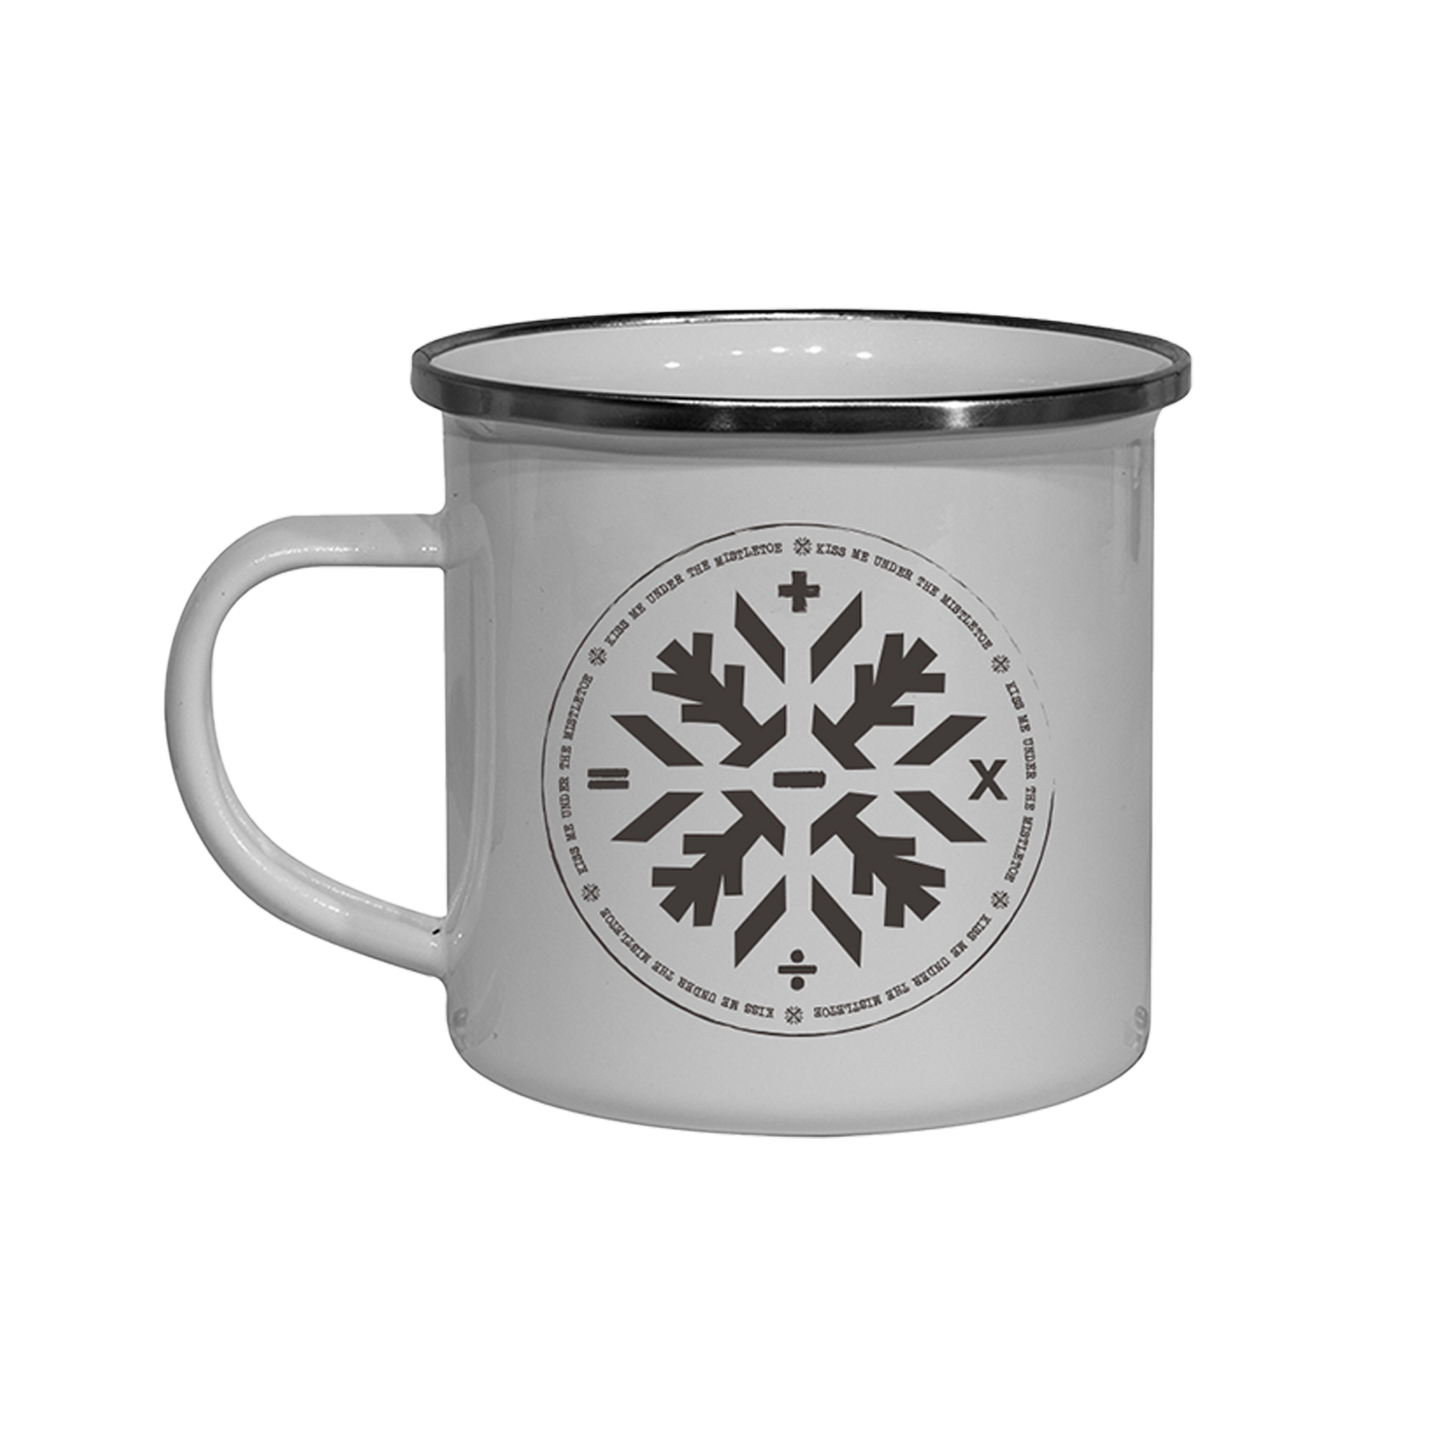 Snowflake Enamel Mug